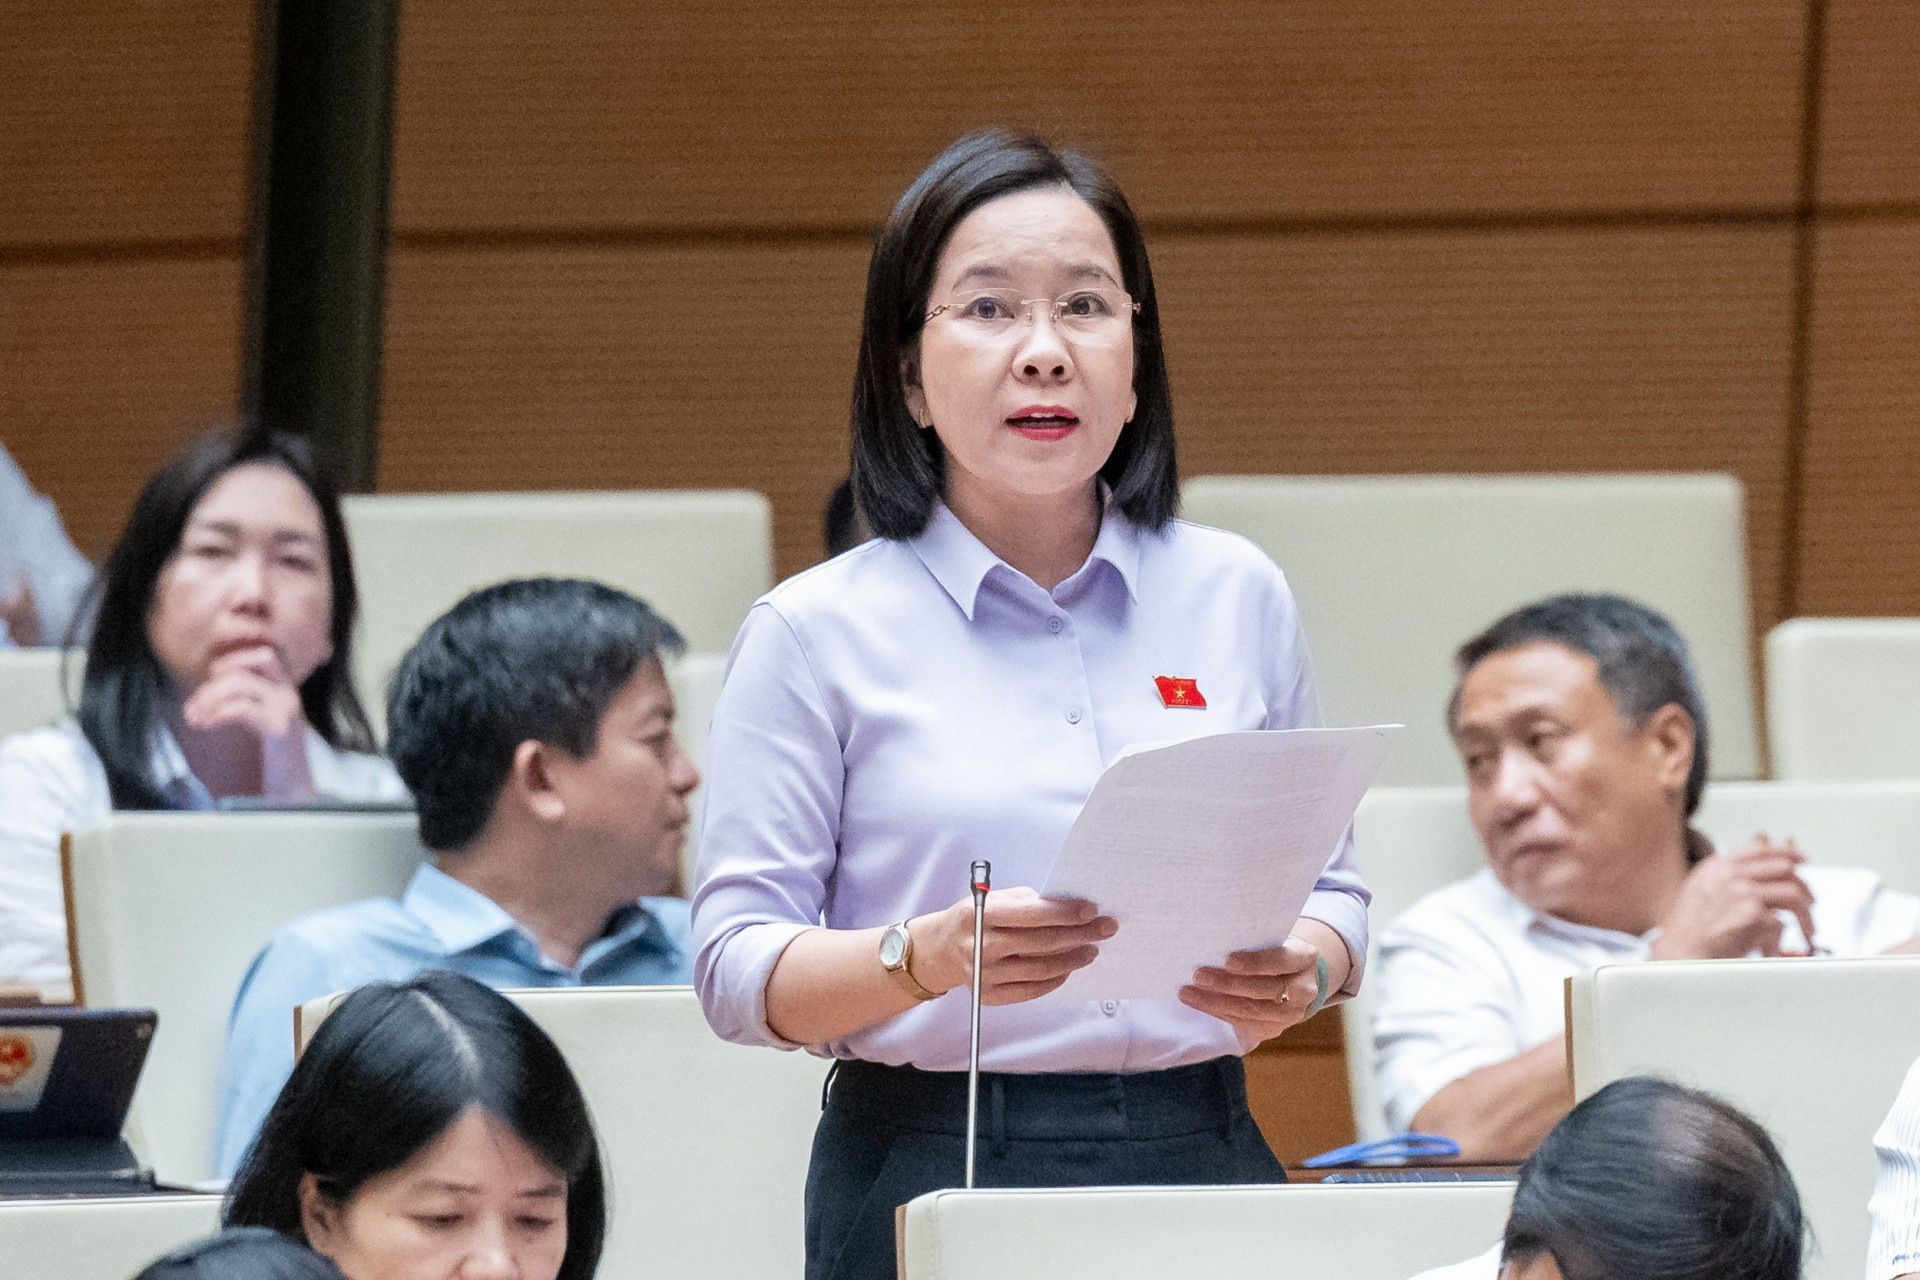 Bà Hà Hồng Hạnh – Chủ tịch Hội nông dân tỉnh Khánh Hòa, đại biểu Quốc hội tỉnh Khánh Hòa tham gia góp ý dự thảo Luật Công đoàn (sửa đổi)

